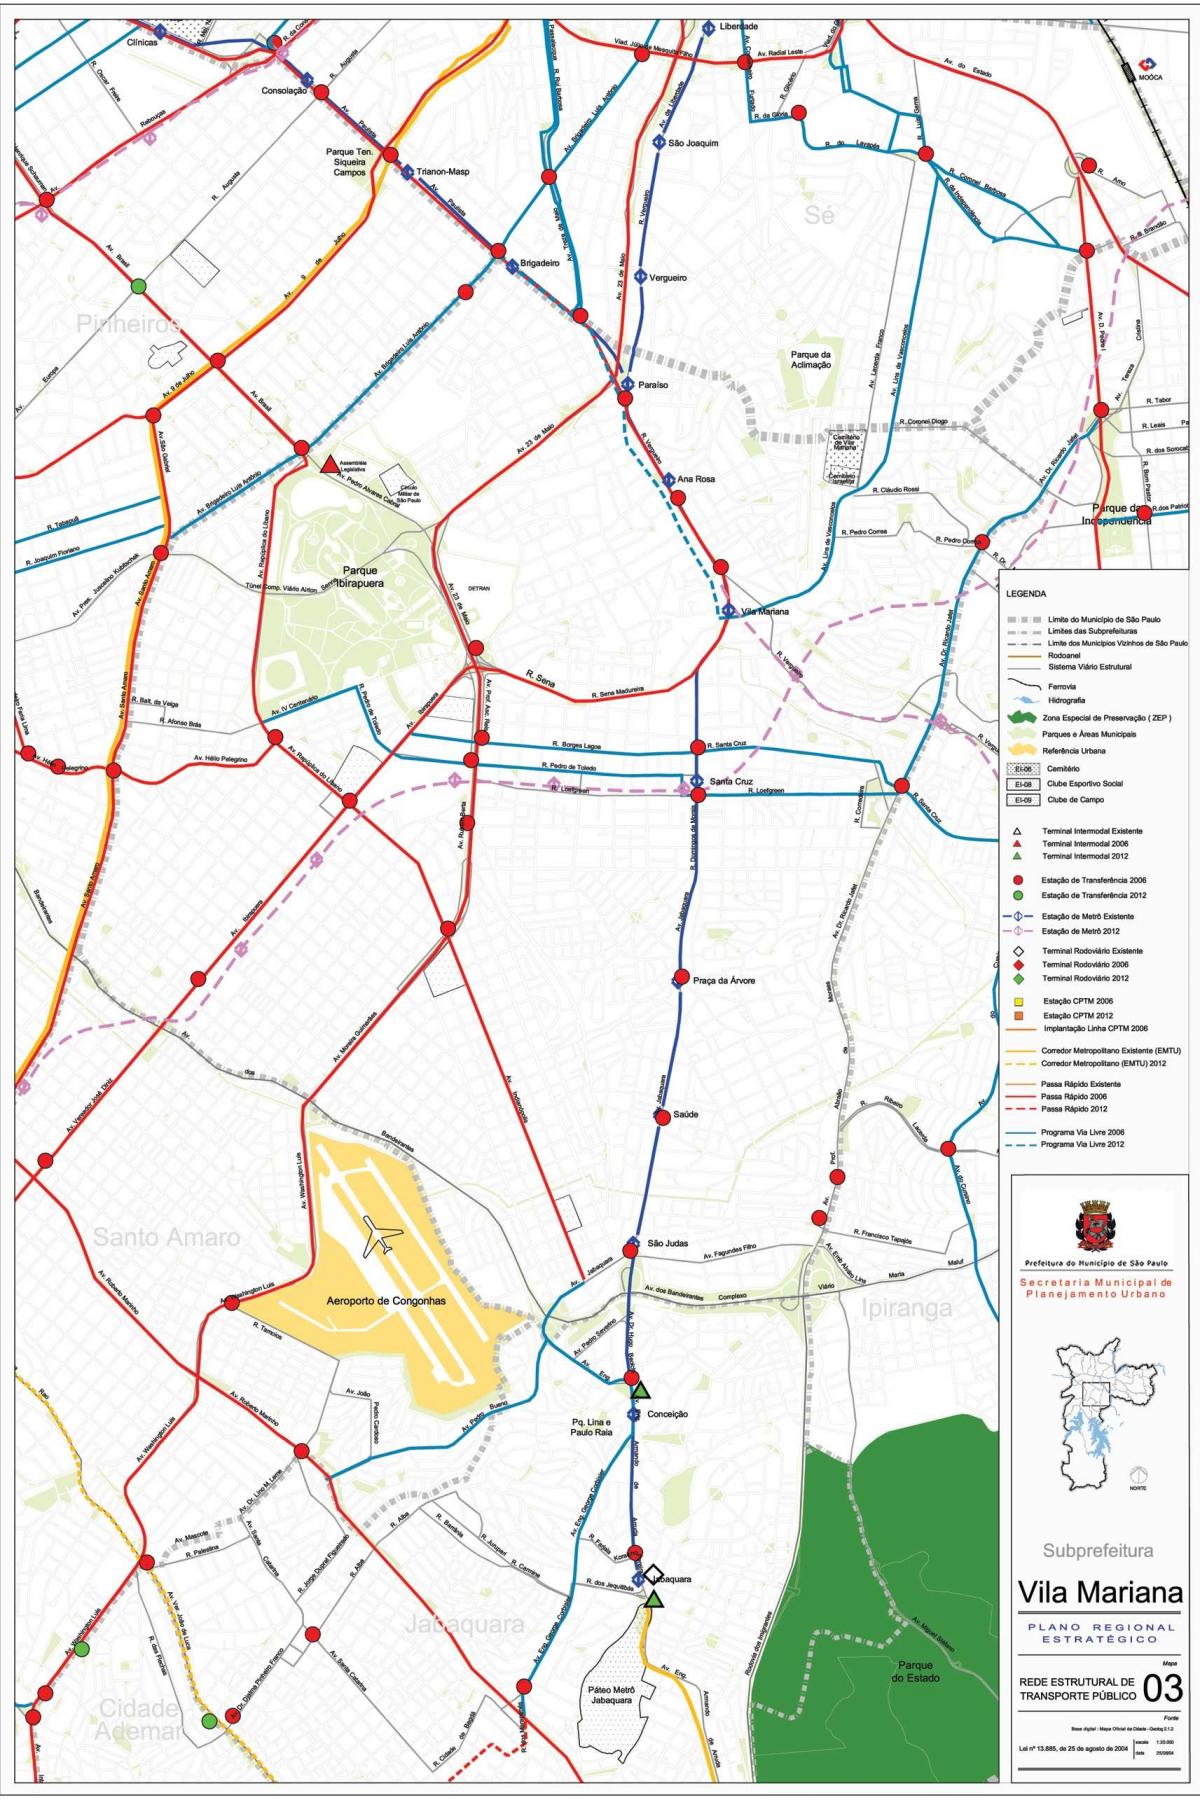 Mapa Vila Mariana Sao Paulo - Javni prijevoz